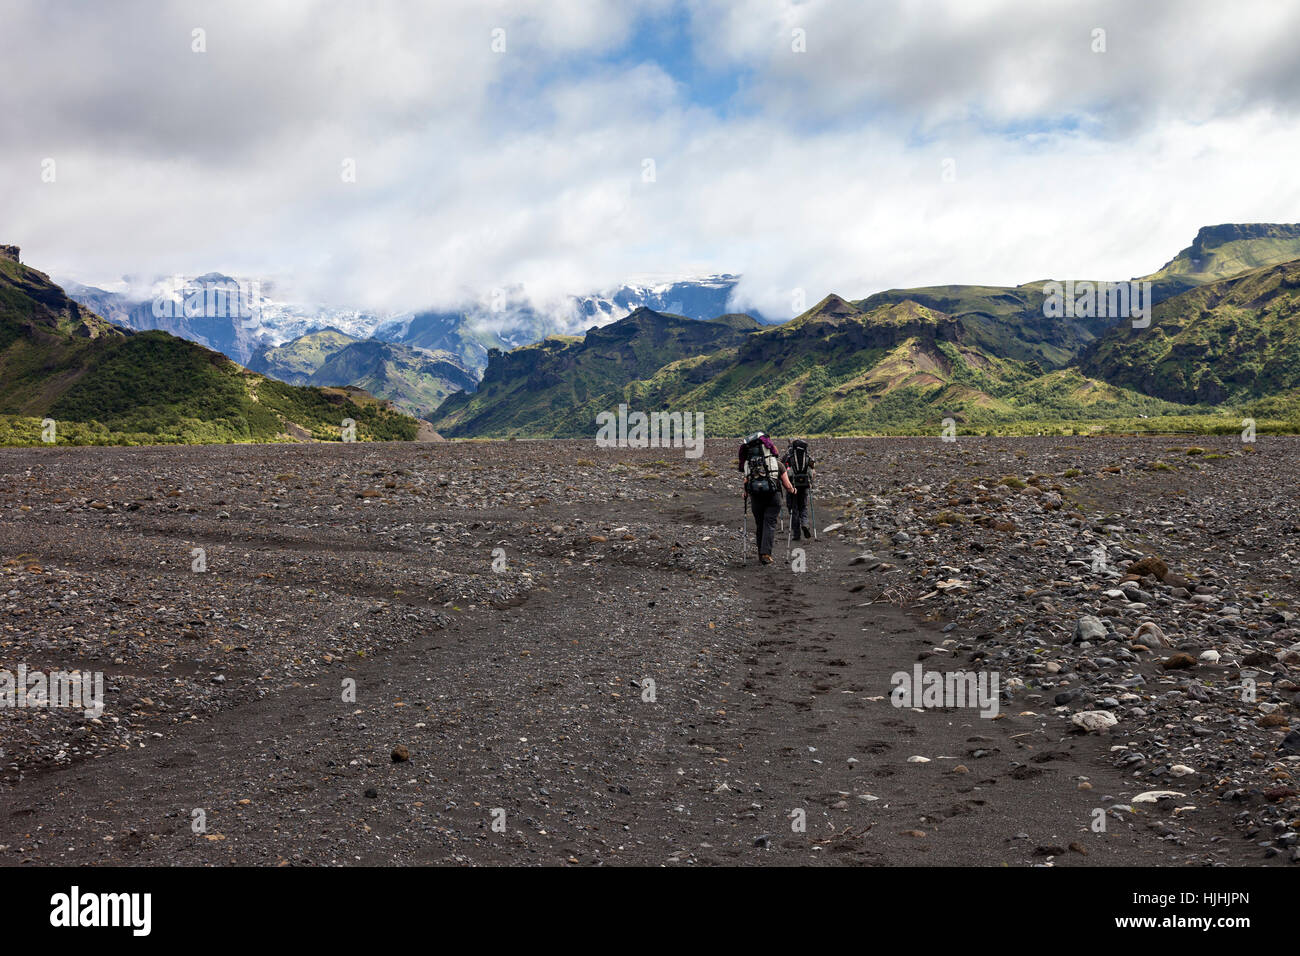 Gli escursionisti che attraversa il fiume Krossa pianura alluvionale con il Myrdalsjokull Icecap davanti, sotto il quale si trova il vulcano Katla, Islanda Foto Stock